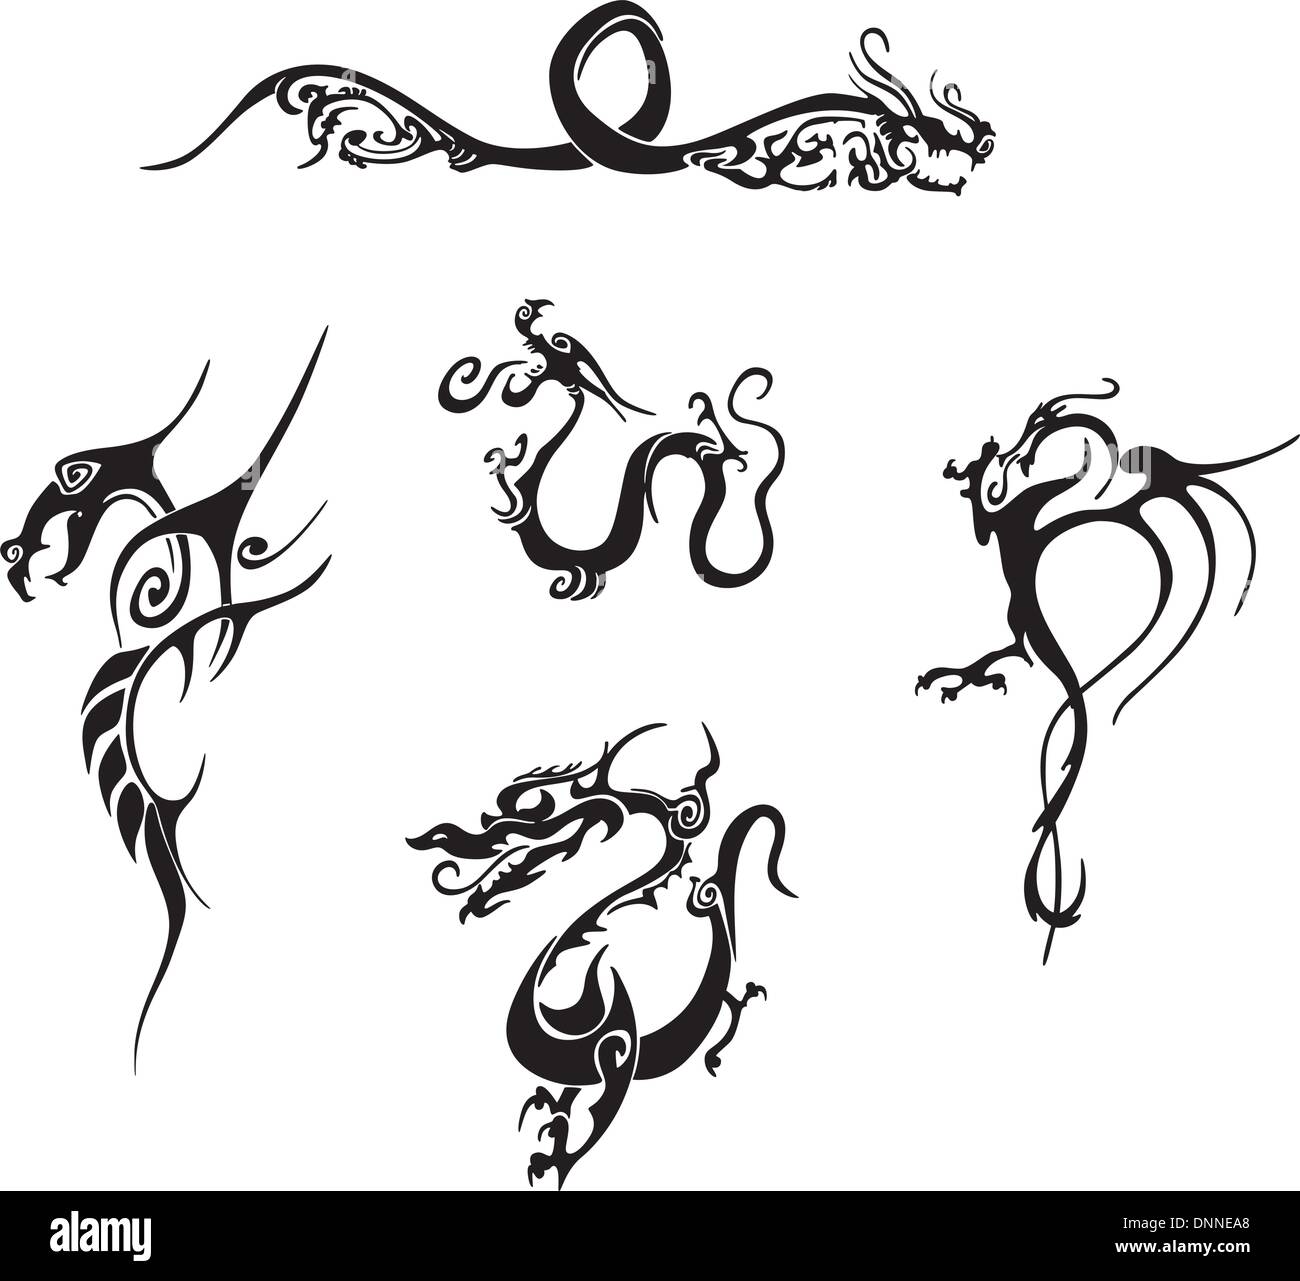 Cinq motifs de tatouage de dragon simple impressionnant. EPS vinyl-ready illustrations, croquis en noir et blanc. Illustration de Vecteur